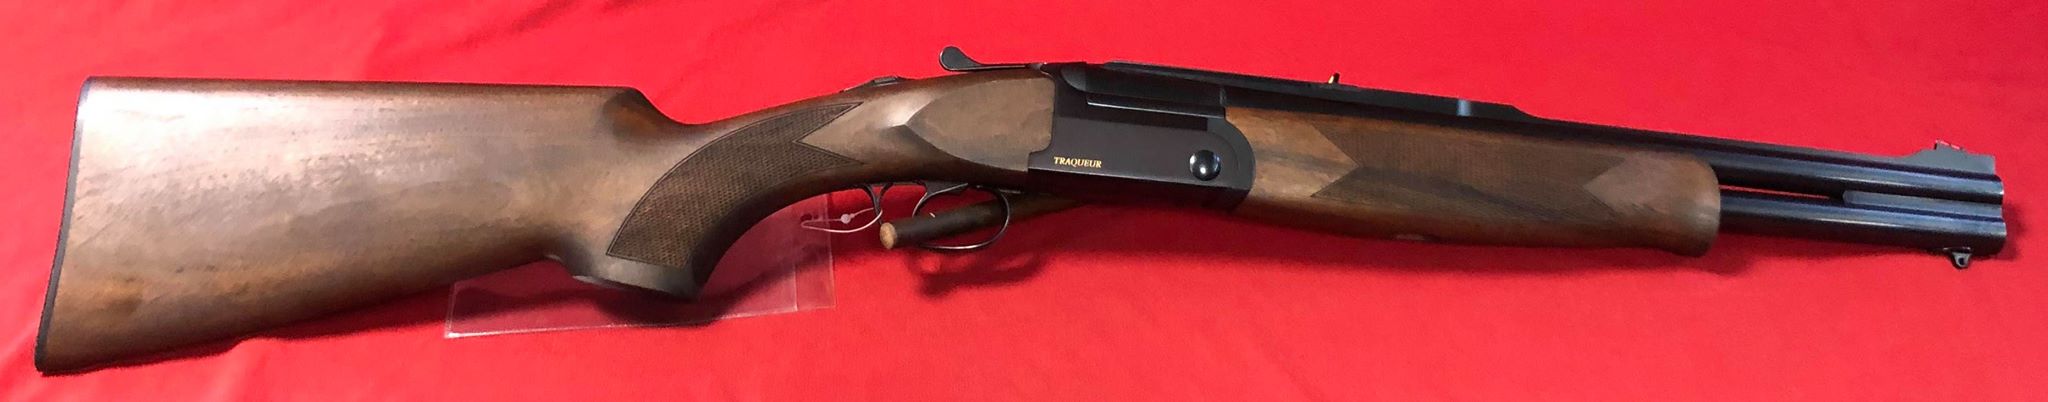 Fusil Fair Slug Traqueur en calibre 12/76 , mono détente avec sélecteur, 
Longueur des canons 46 cm
Longueur de crosse 37cm